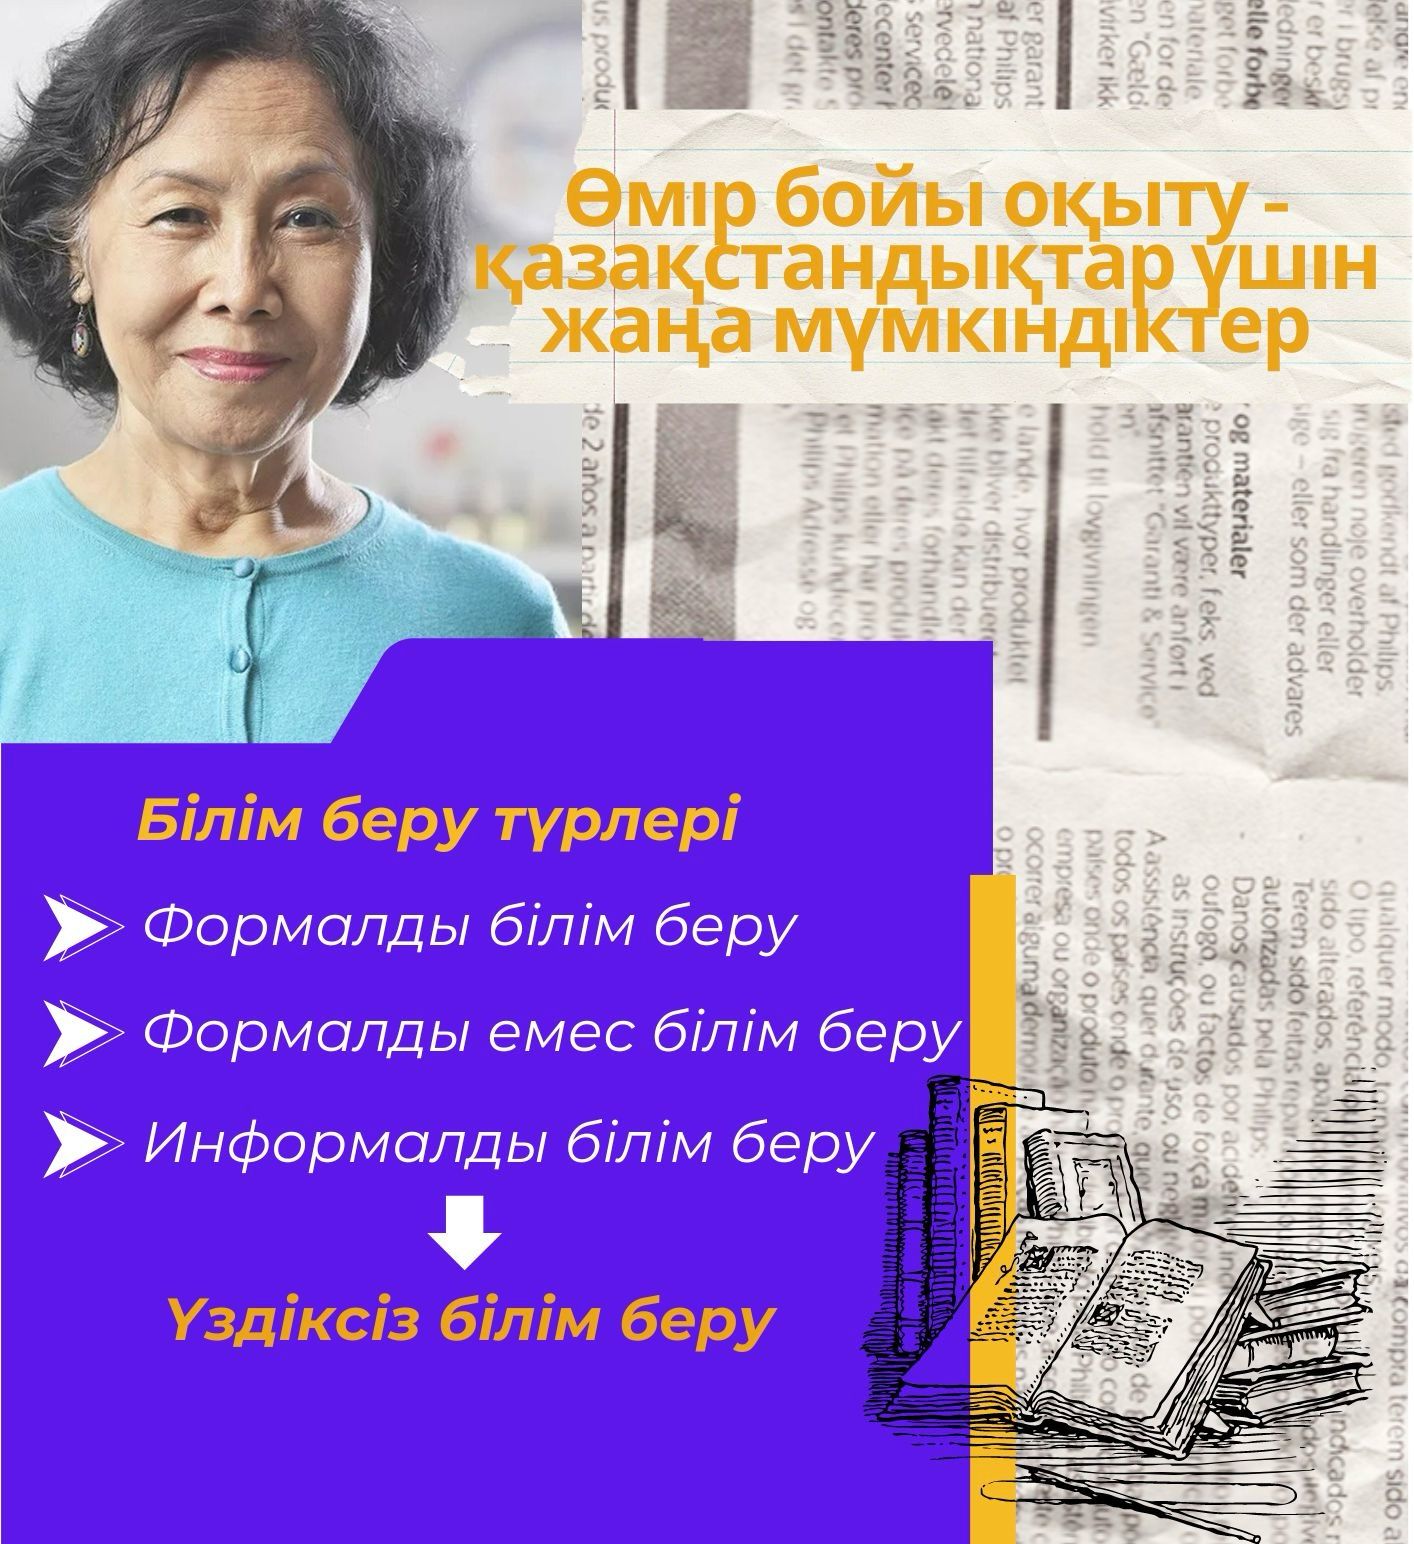 LIFELONG LEARNING - NEW OPPORTUNITIES FOR KAZAKHSTANIS